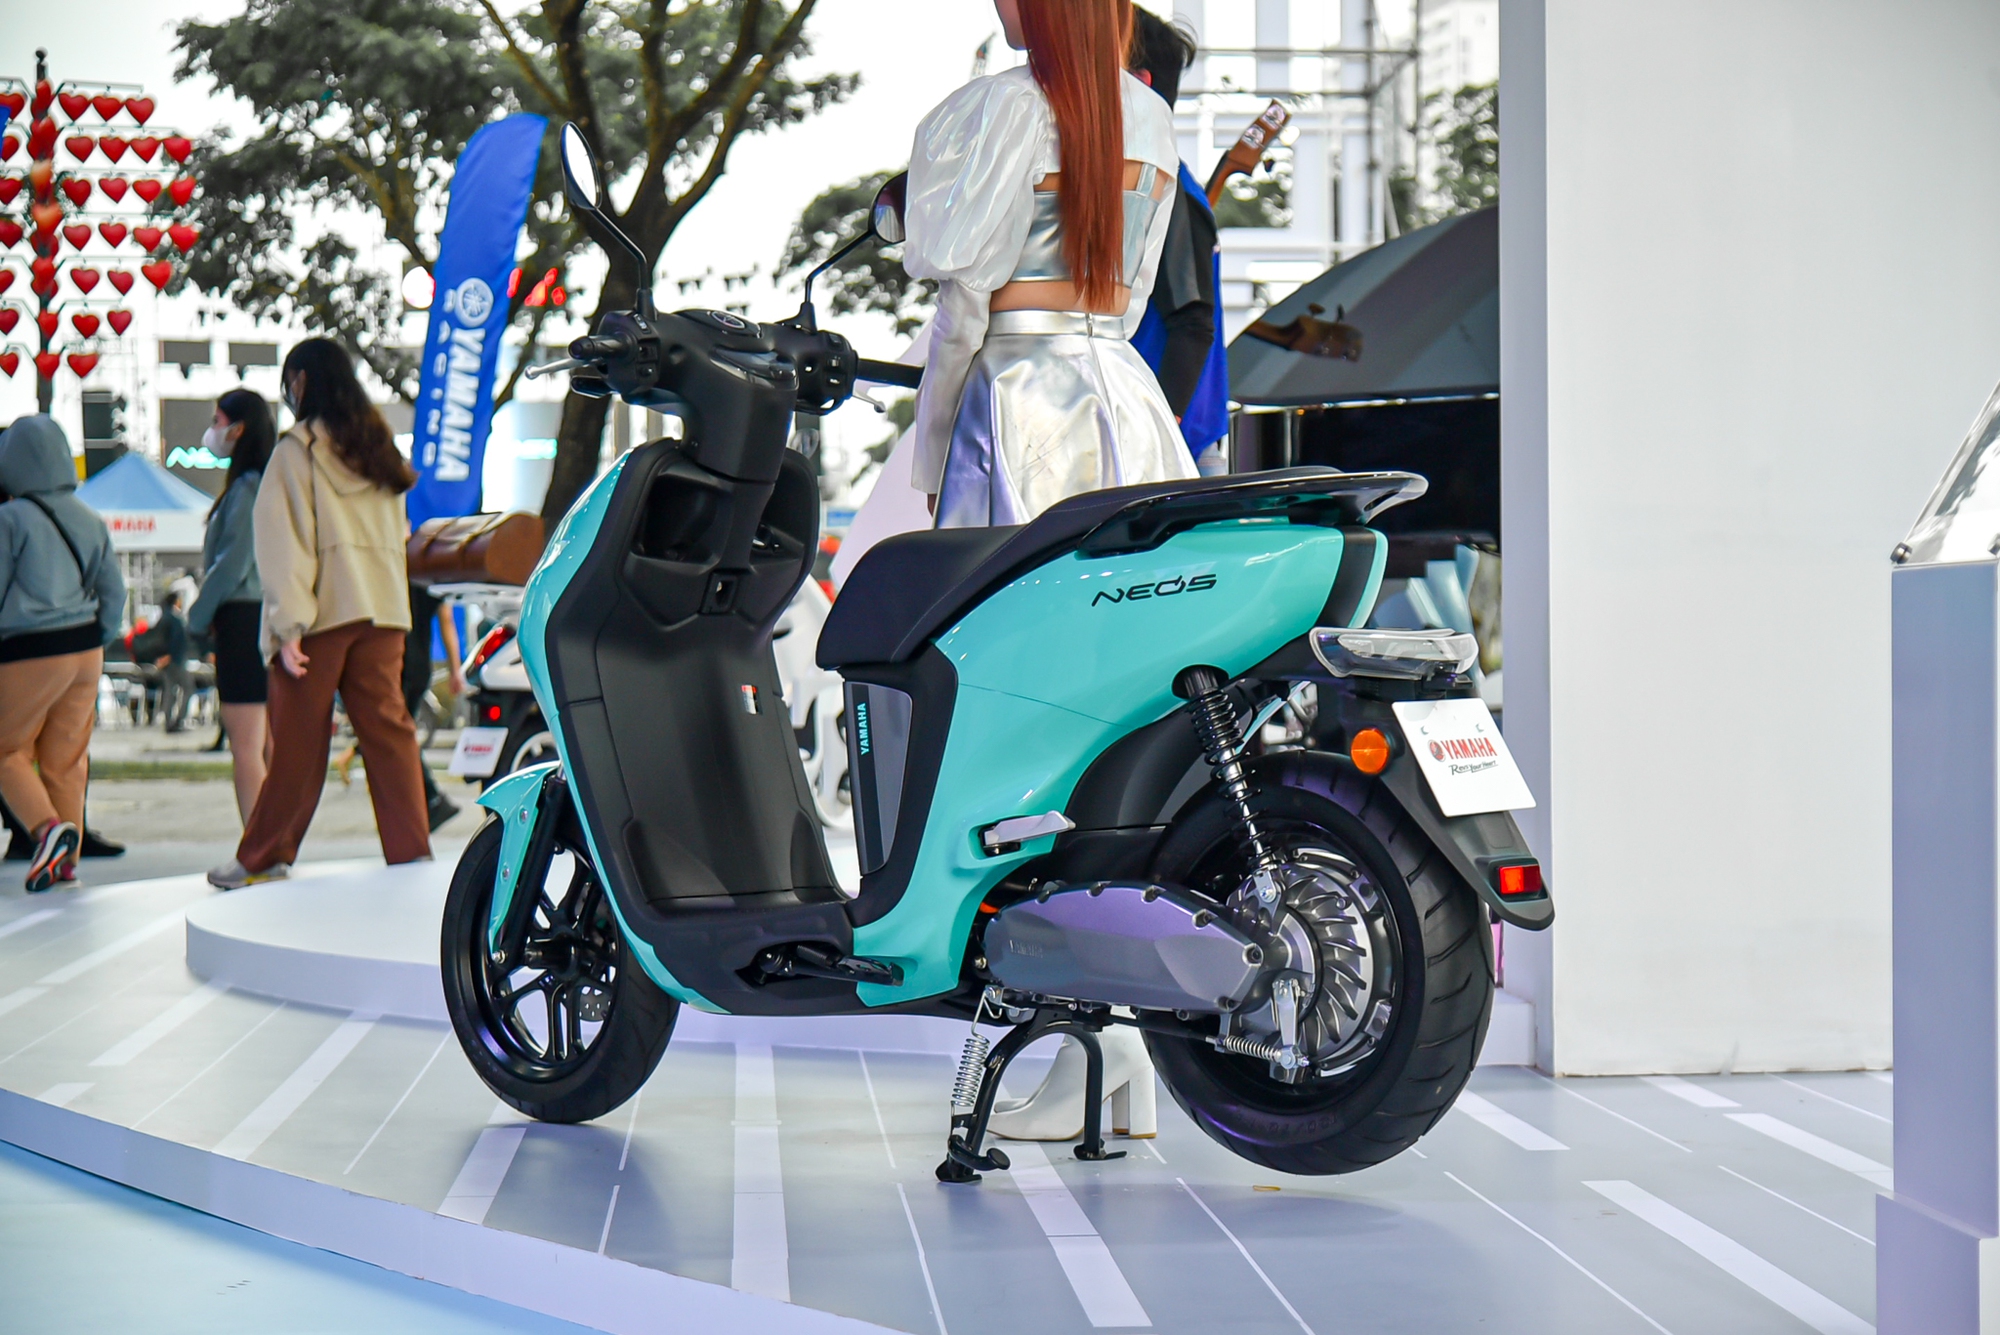 Xe điện Yamaha Neo's mở bán tại Việt Nam: Giá 50 triệu đồng, có thể đi tối đa hơn 140 km/lần sạc - Ảnh 3.